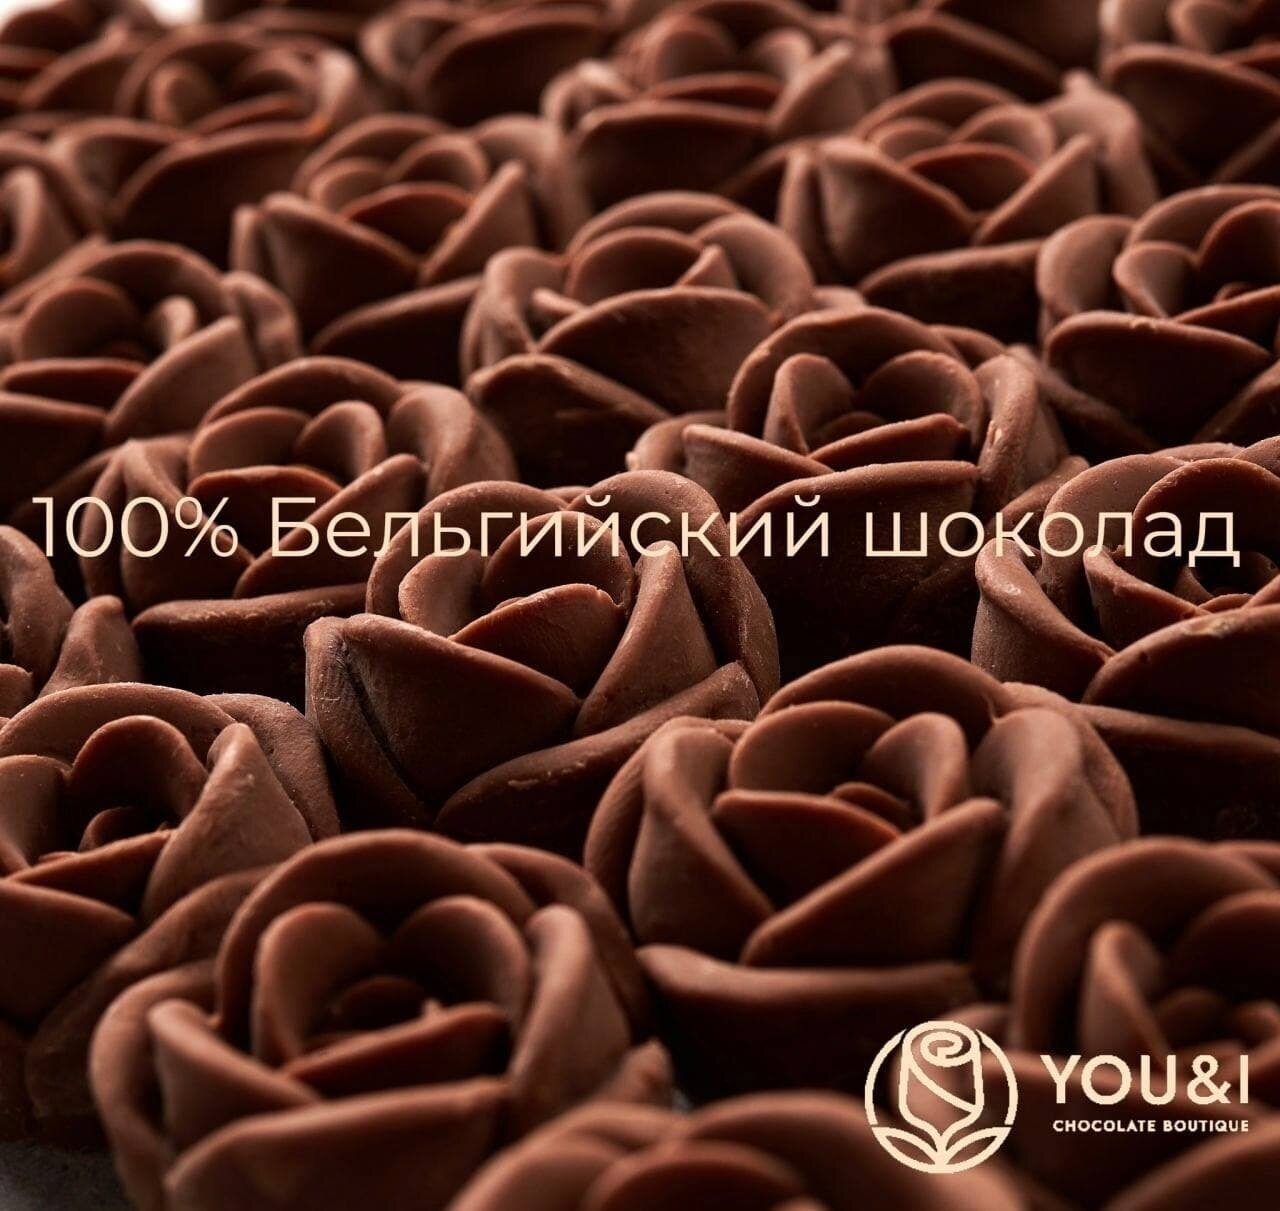 19 шоколадных роз в букете You&i бельгийский шоколад / вкусный сюрприз подарок конфет